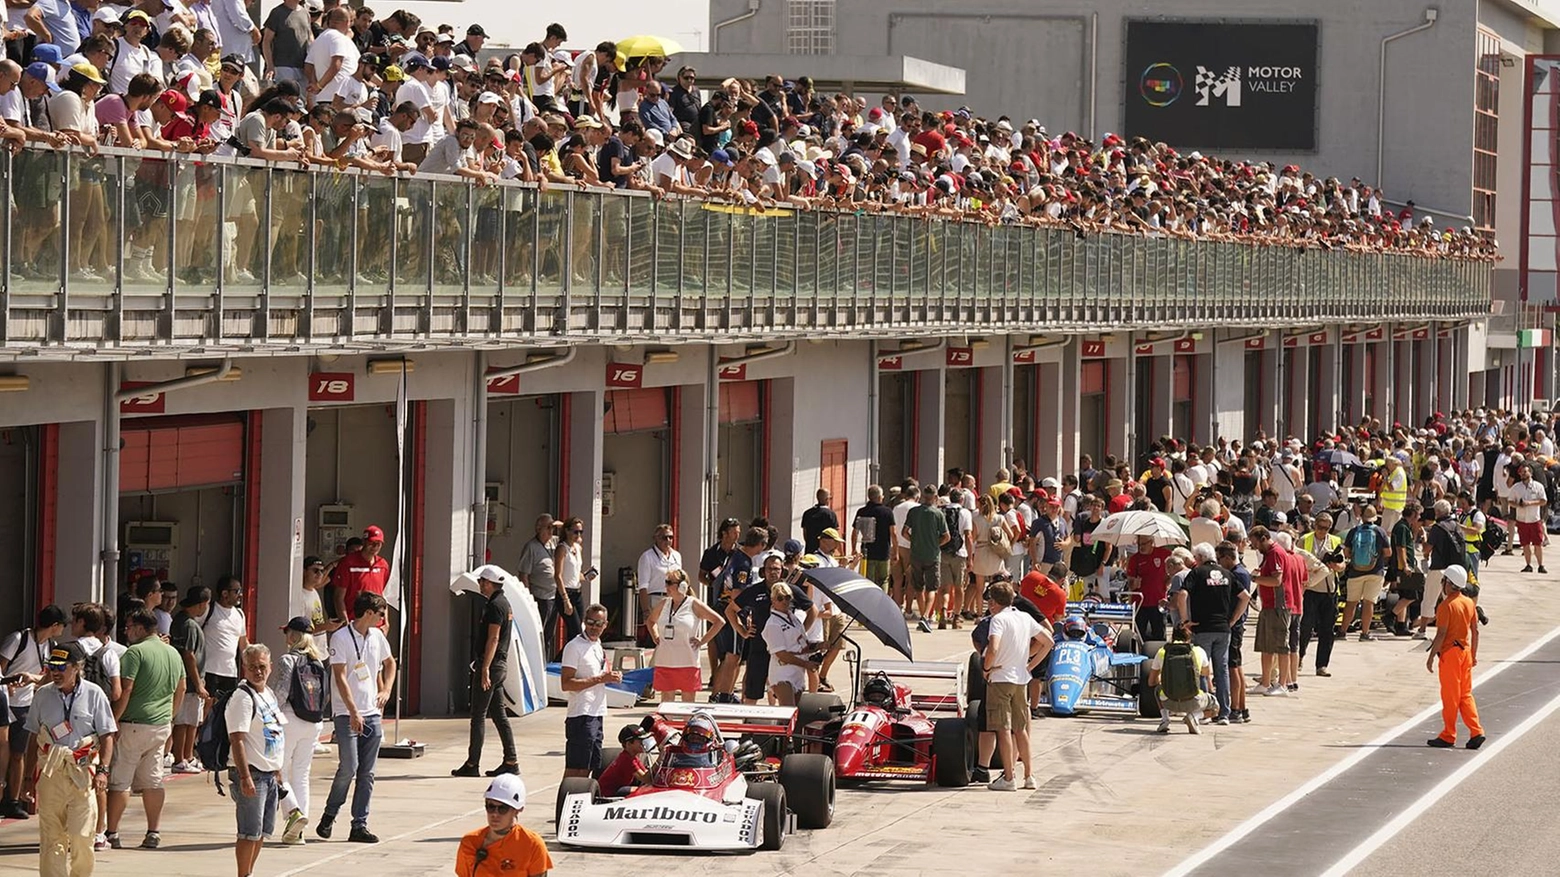 Ecco il Minardi day   Il calore dei tifosi   in Autodromo   "La vera F1 è qui"